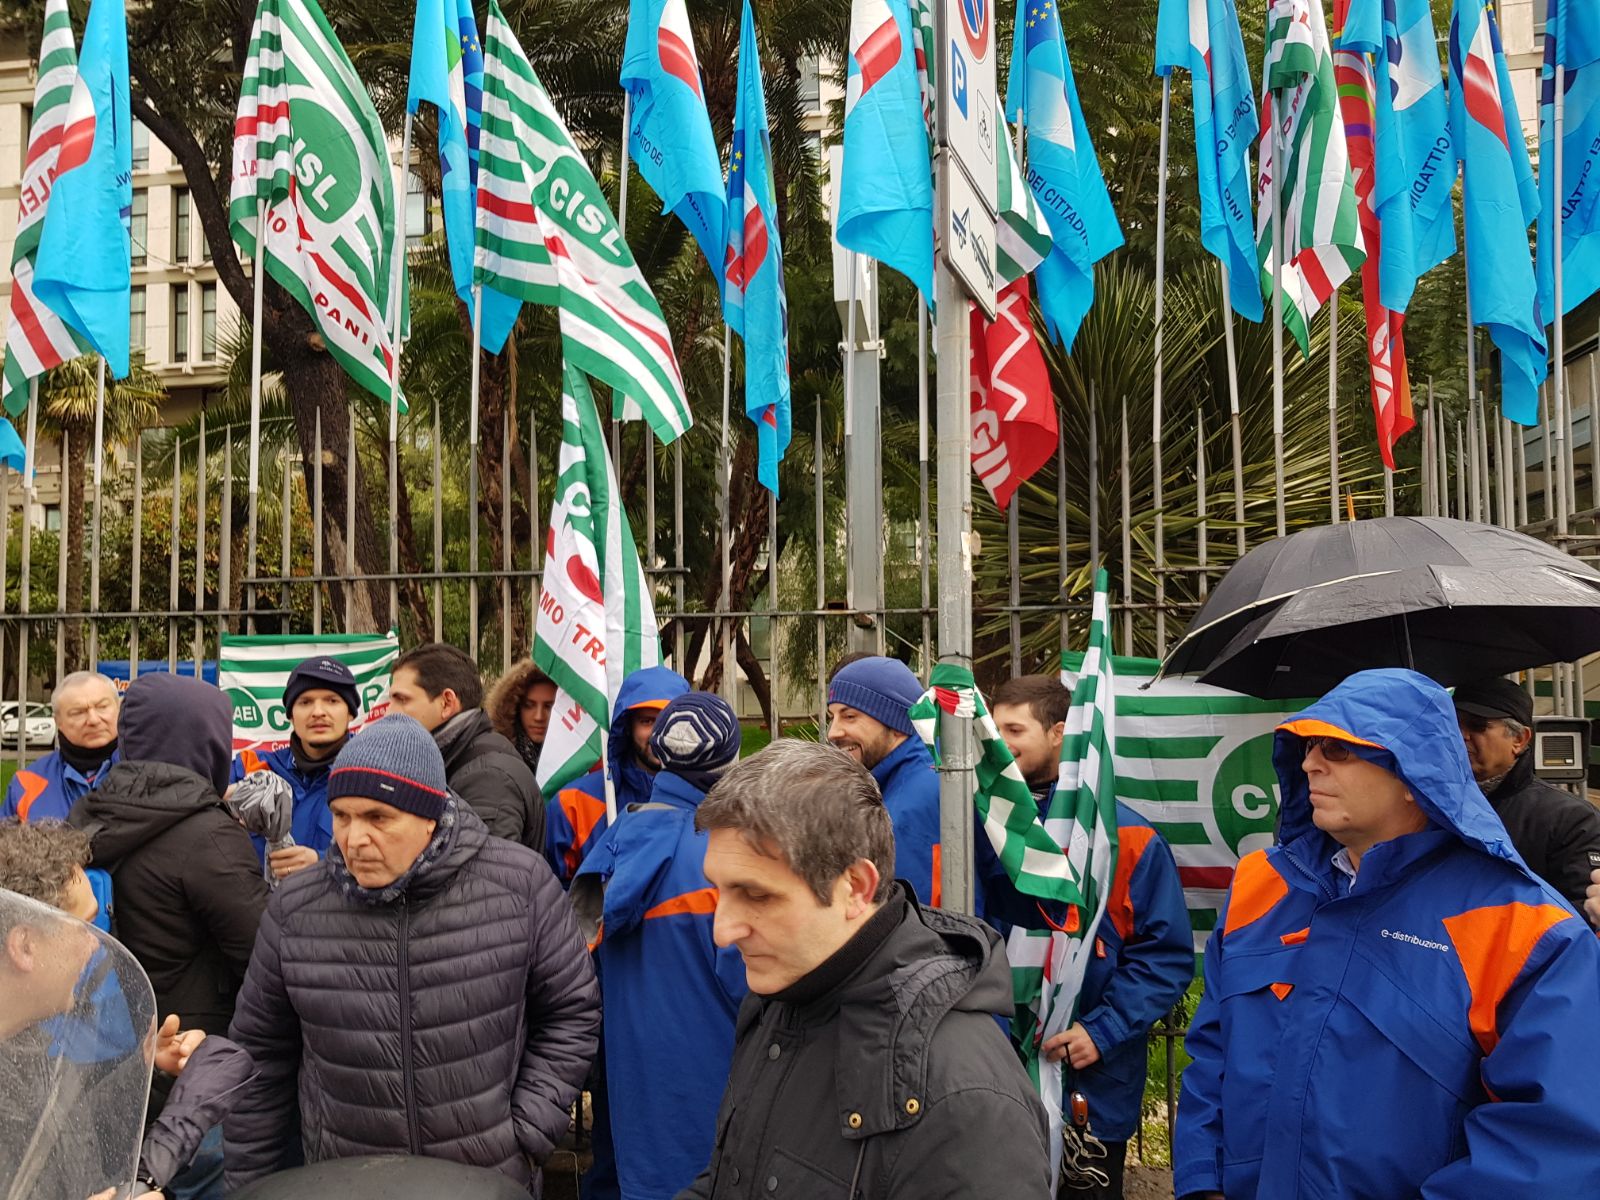 E-distribuzione: carichi eccessivi, primo giorno sciopero a Palermo